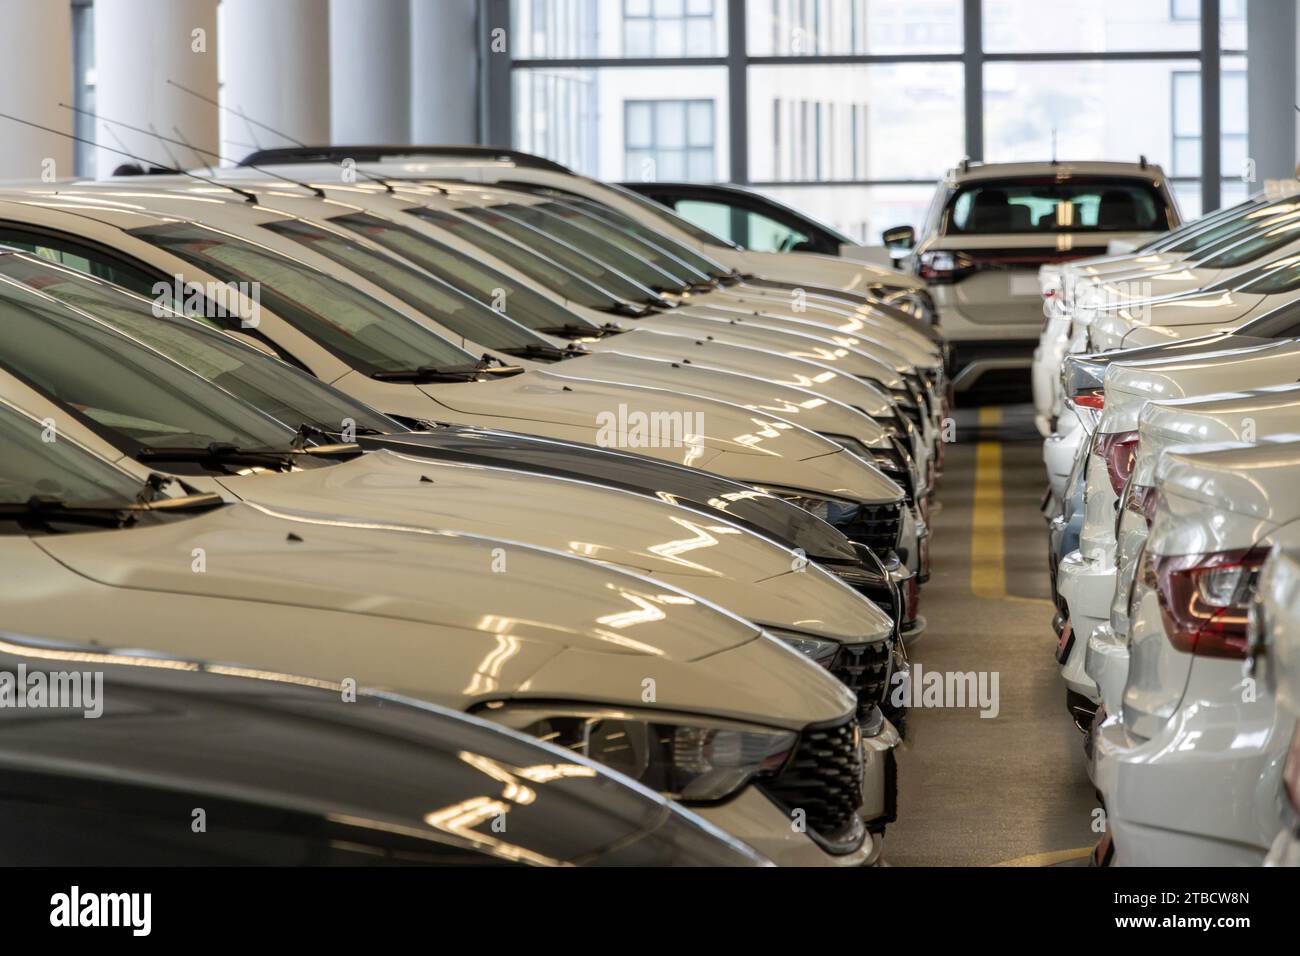 Ventes de voitures d'occasion voitures dans une rangée de voitures Inventaire concessionnaire garage intérieur Banque D'Images